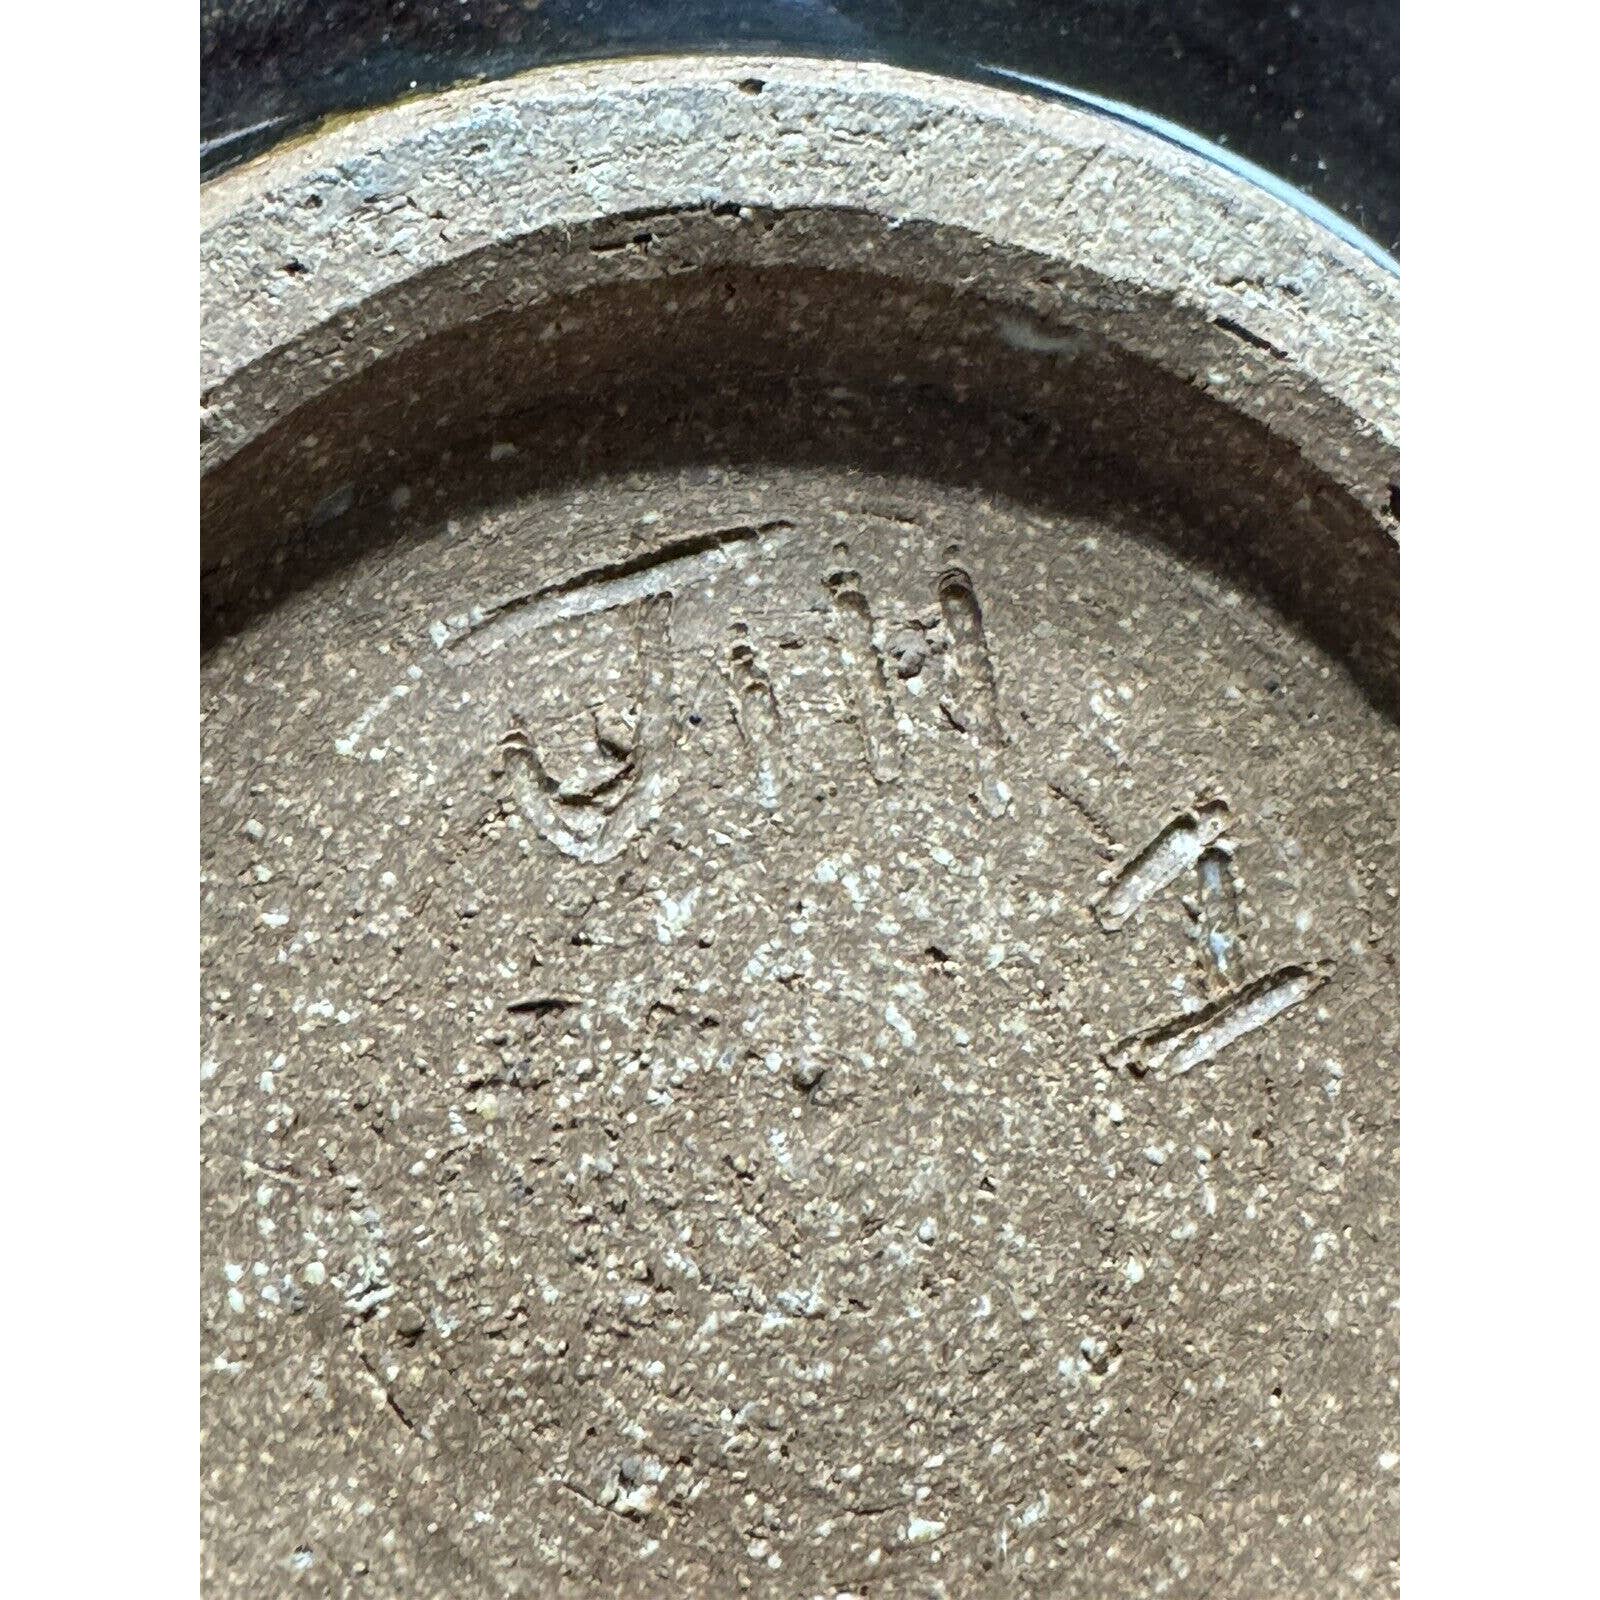 HandcraftedVintage Drip Glazed OOAK Art Pottery Tamadon 8” Ramen Bowl - Signed - Black Dog Vintage